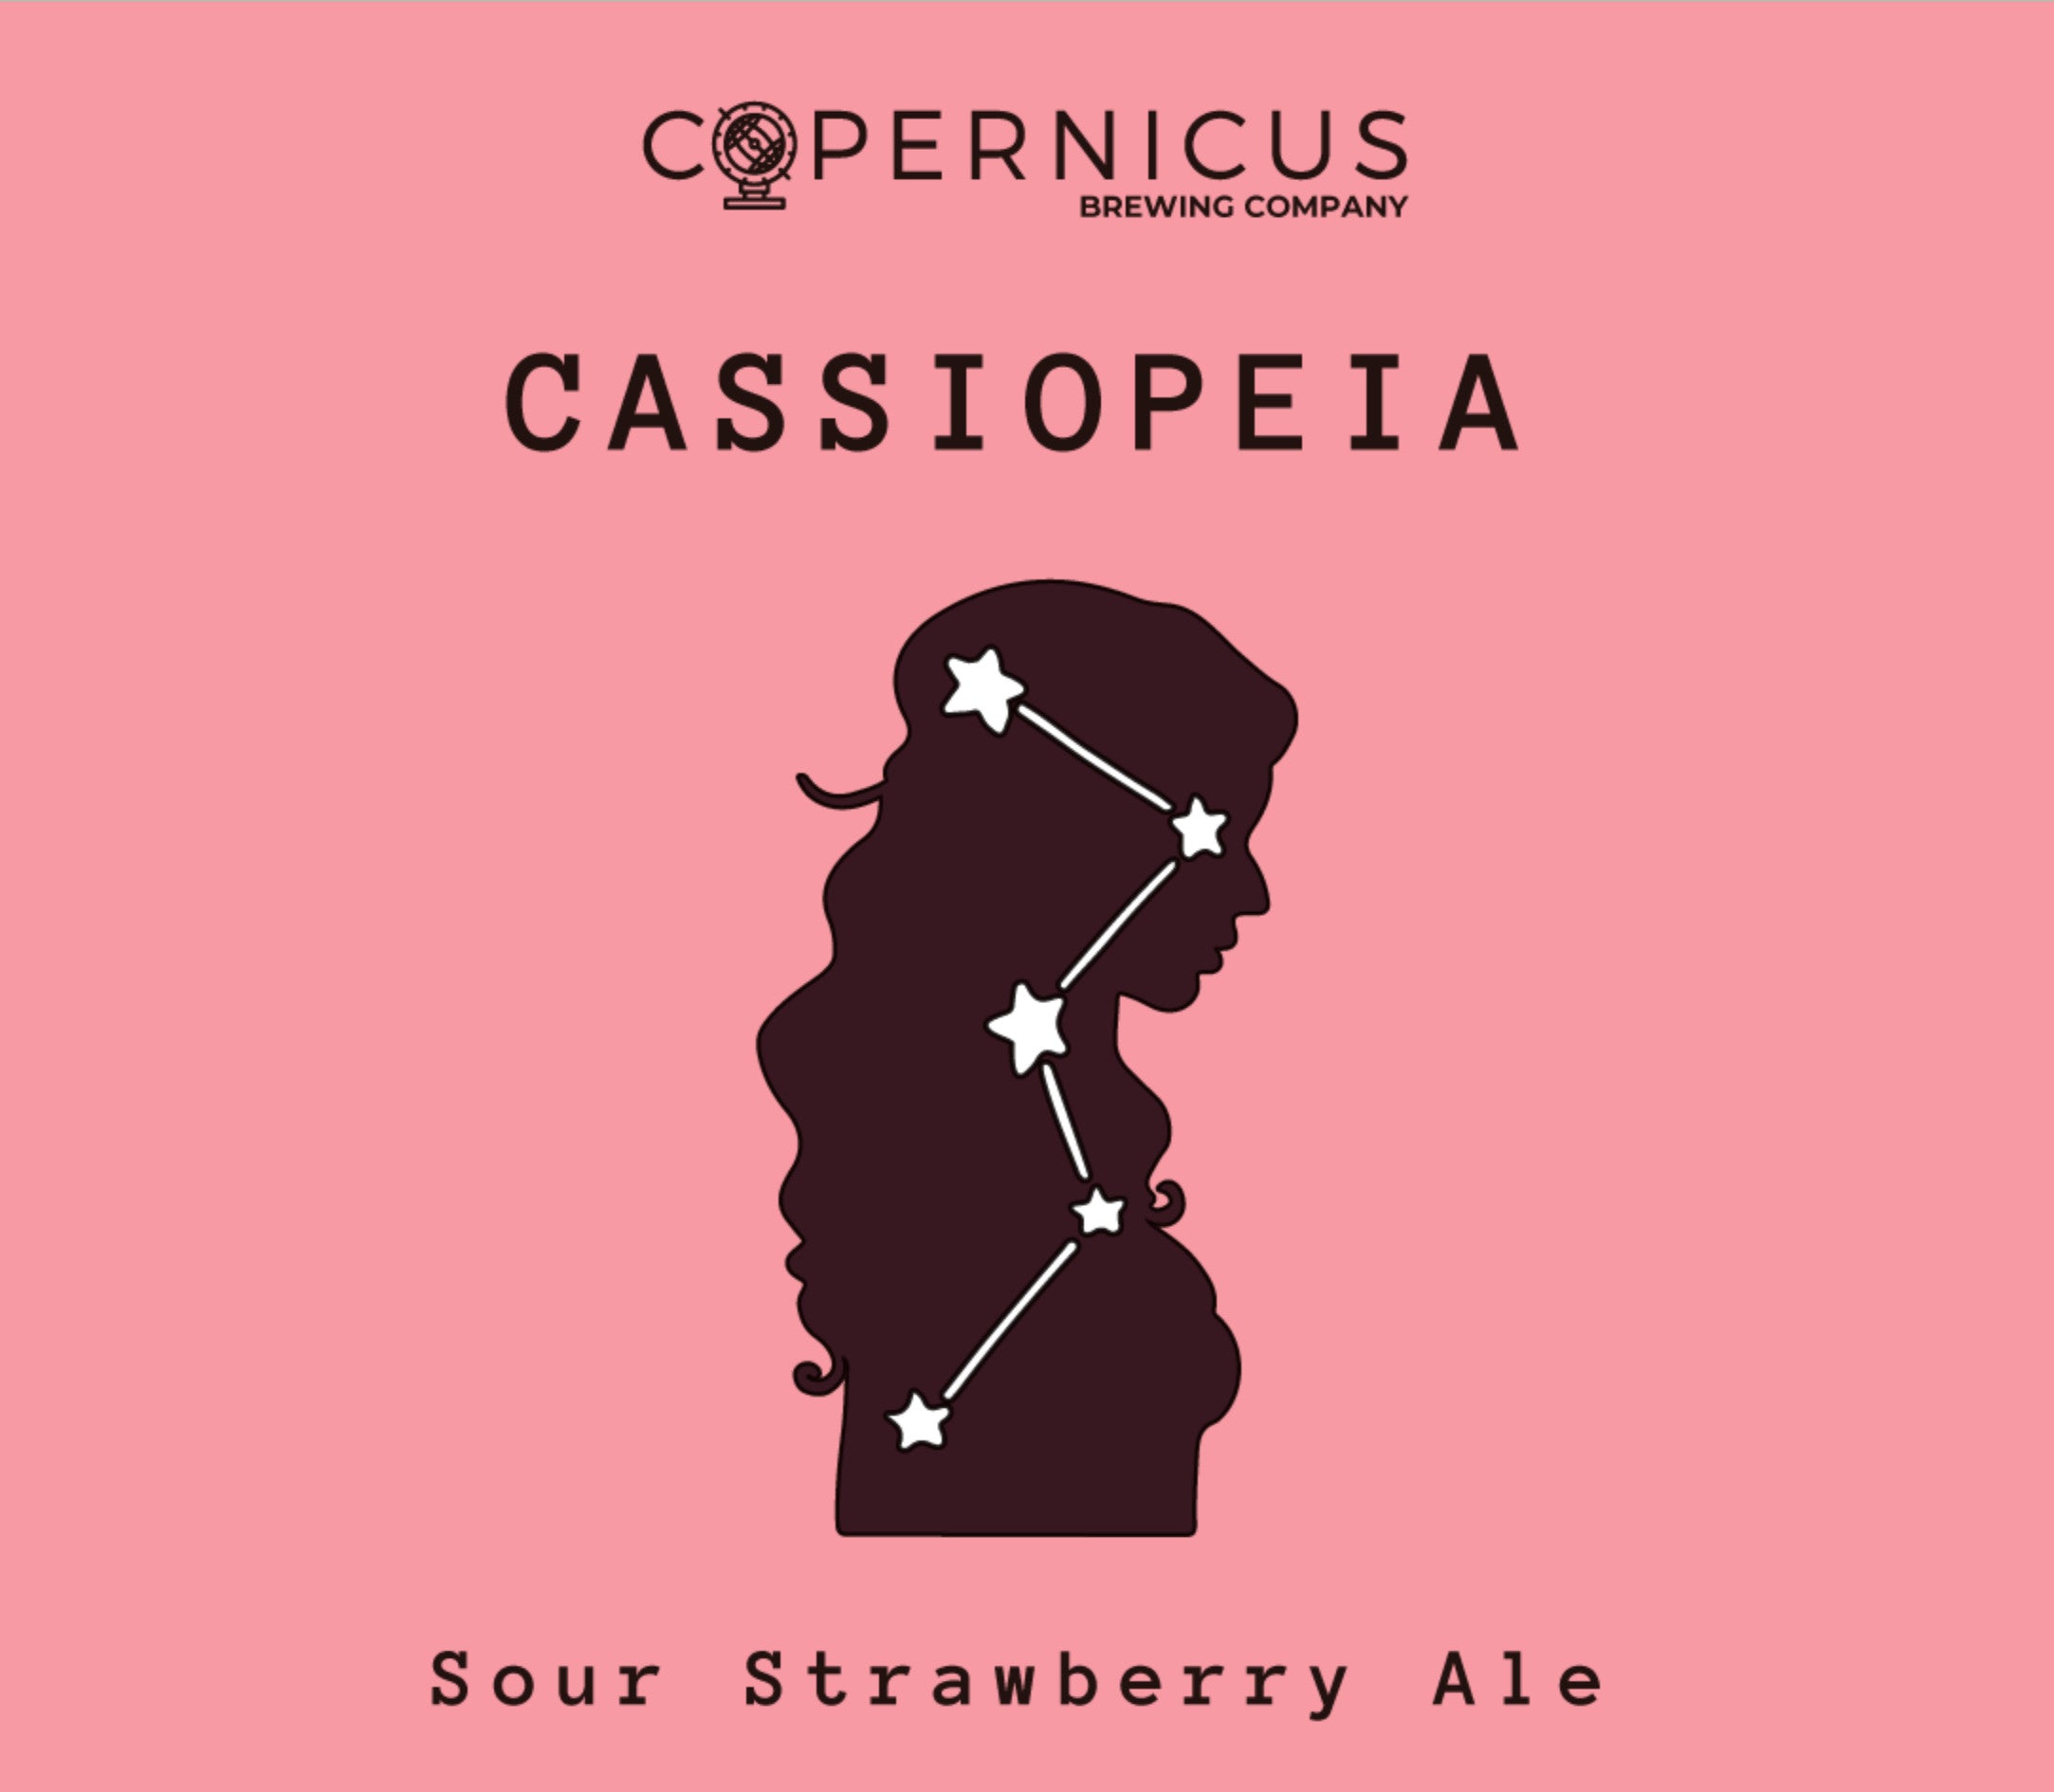 Etiqueta de cerveza Copernicus Cassiopeia - Sour Strawberry Ale